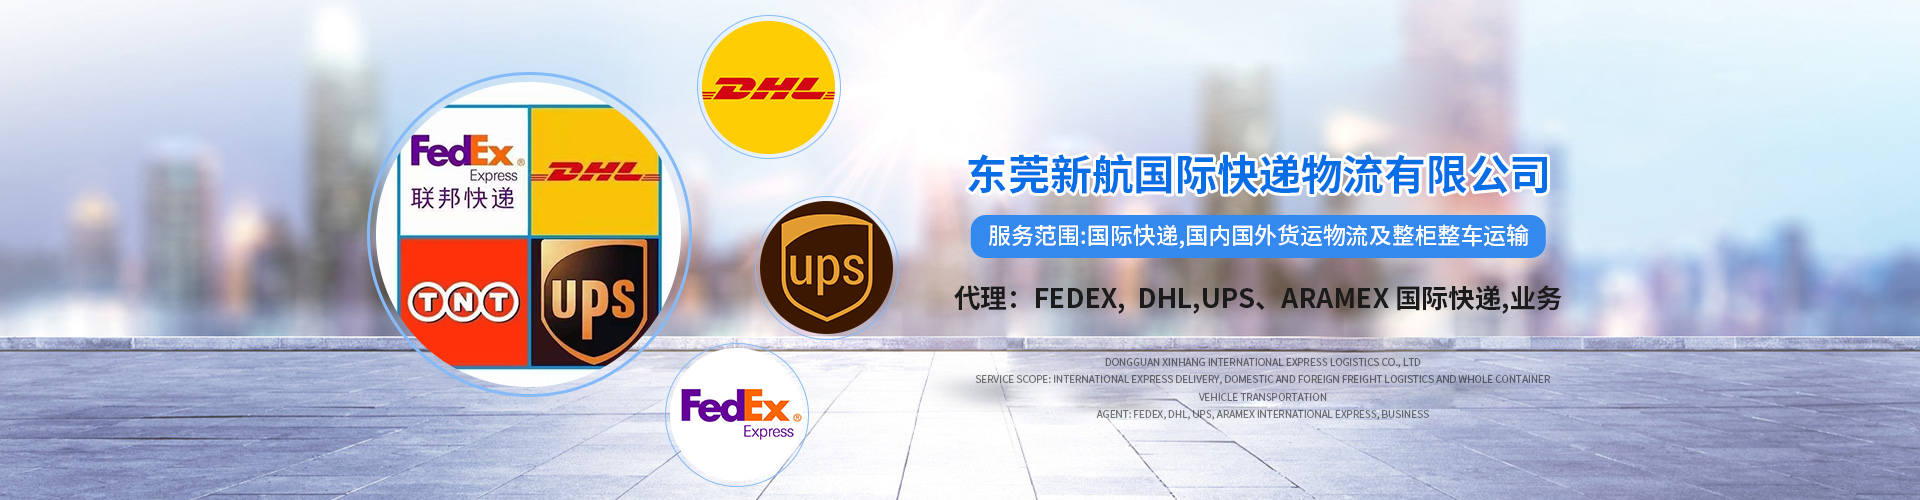 东莞至上海货运公司 常平Aramex代理网点